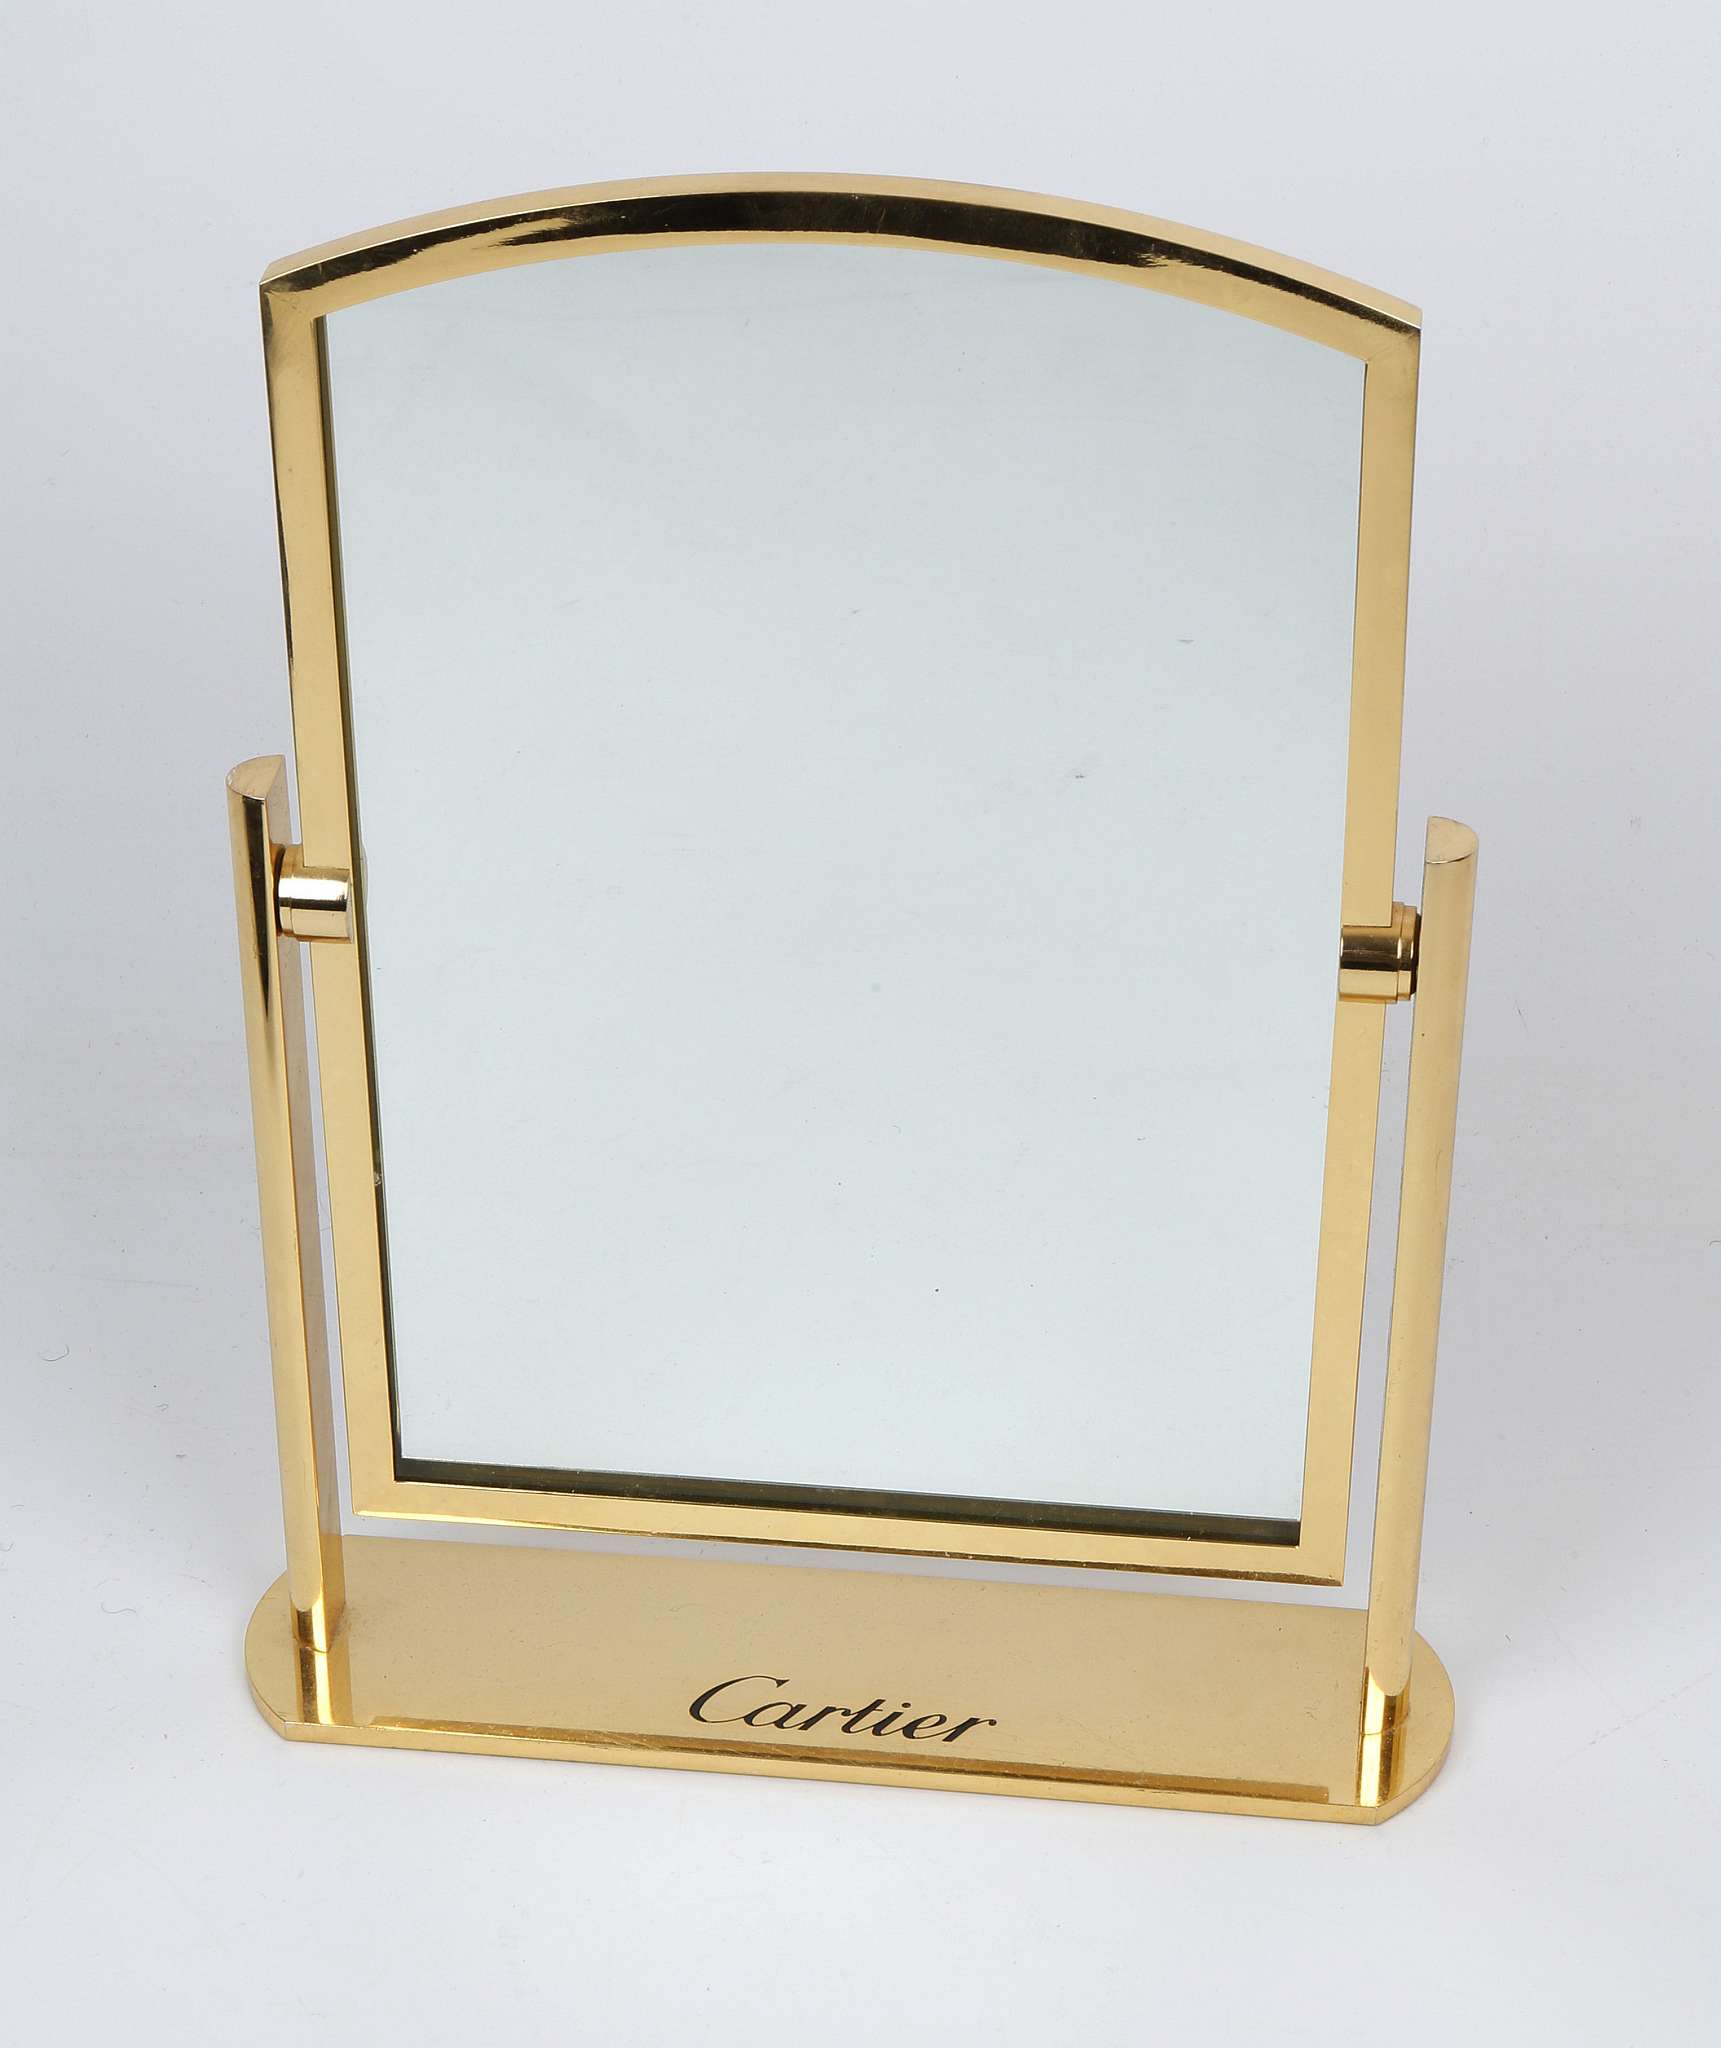 A  Cartier table mirror, gilt bronze tilting mirror, stamped Cartier, (34cm high).